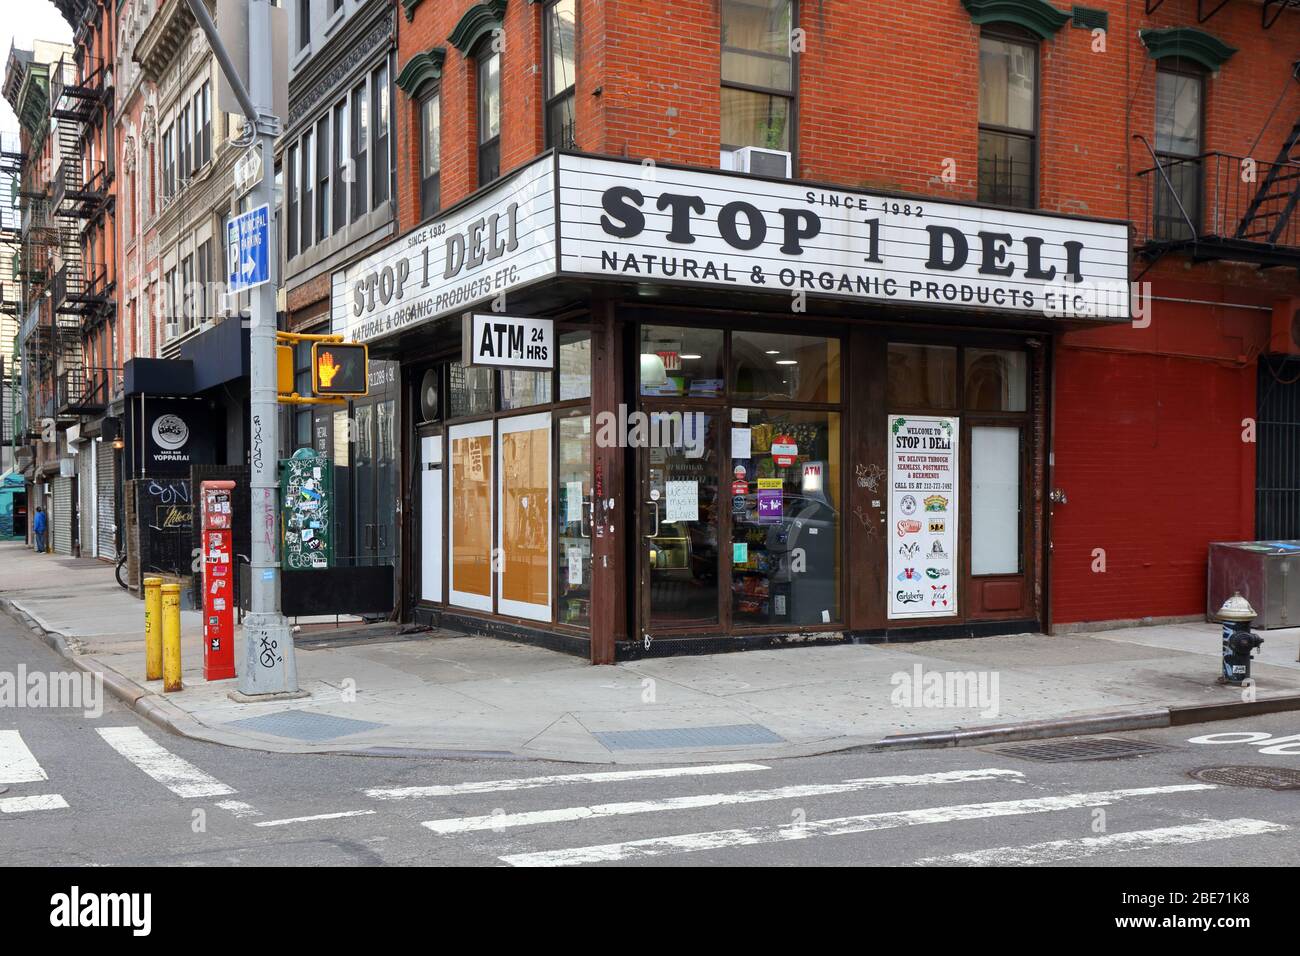 Parada 1 Deli, 122 Suffolk Street, Nueva York, NY. Escaparate exterior de una tienda de delicatessen en la esquina en el Lower East Side de Manhattan. Foto de stock